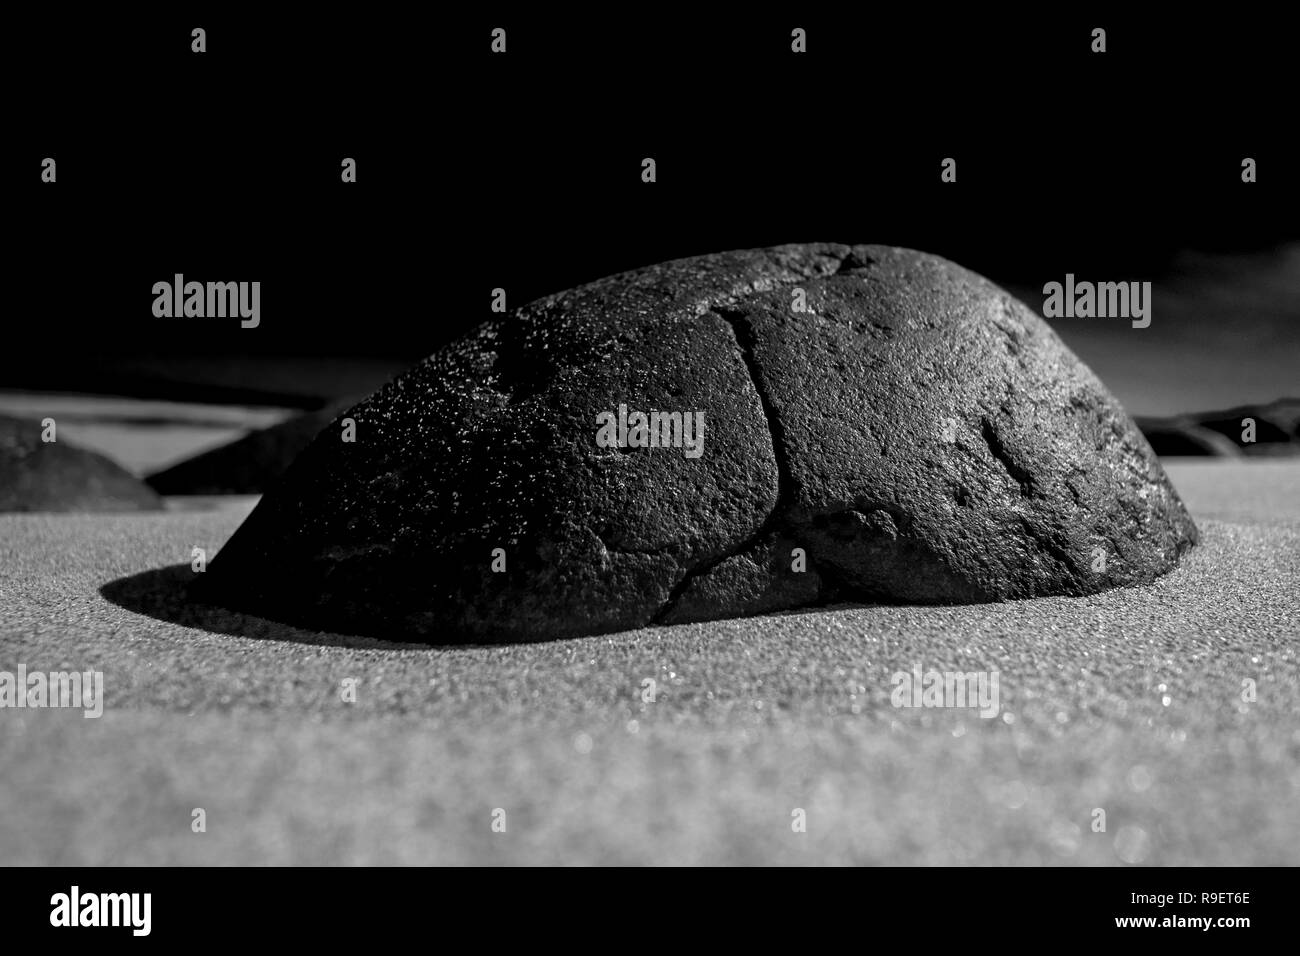 Noir et blanc photo de roches à partir de l'angle inhabituel Banque D'Images